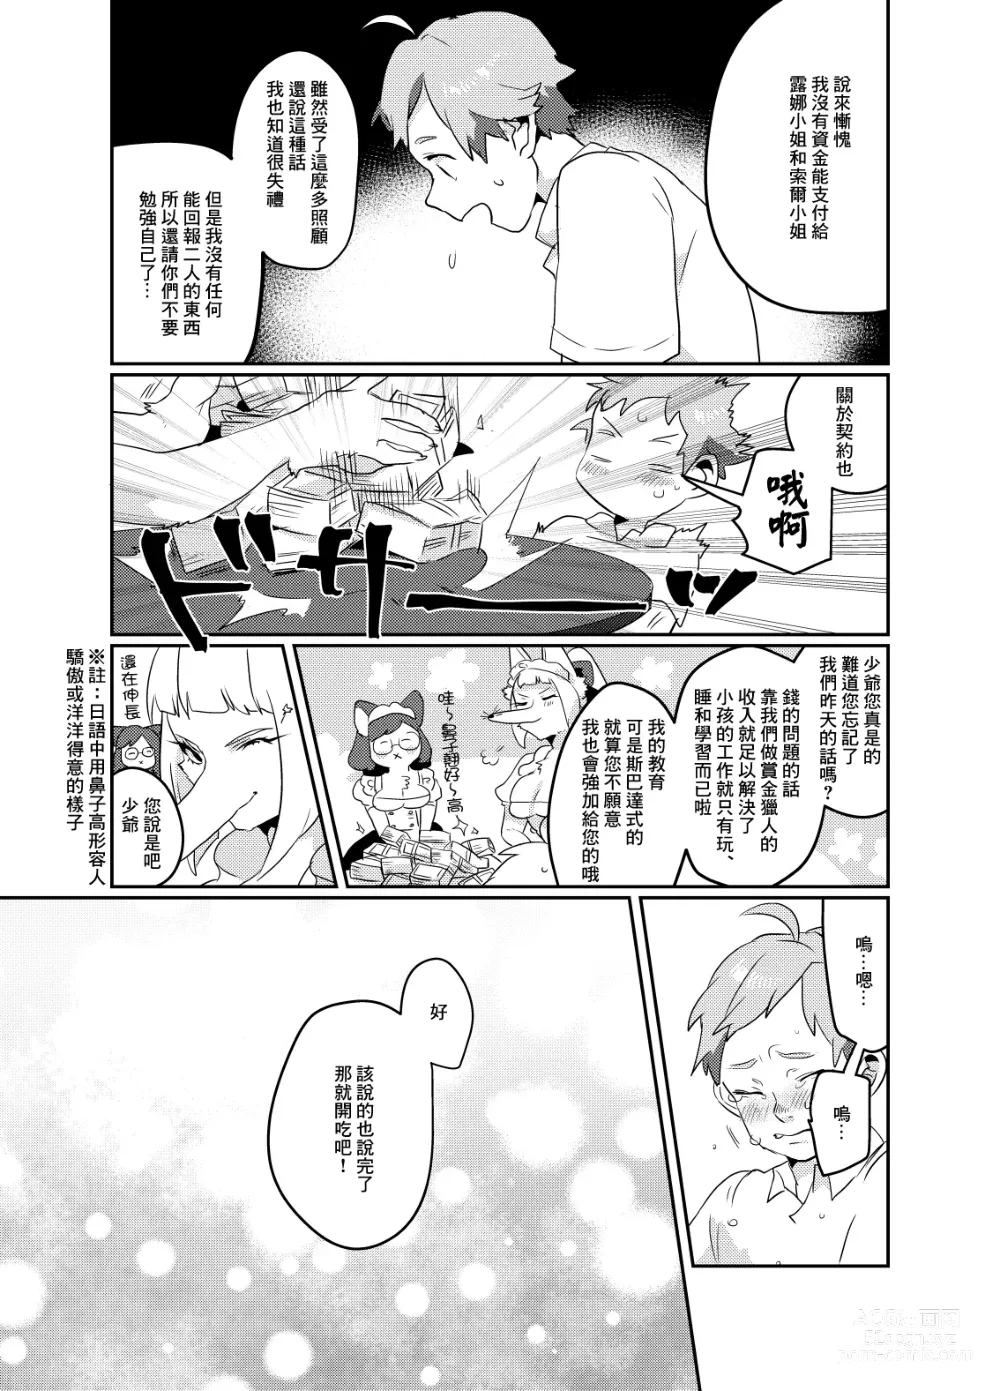 Page 24 of doujinshi Meido inHEAVEN